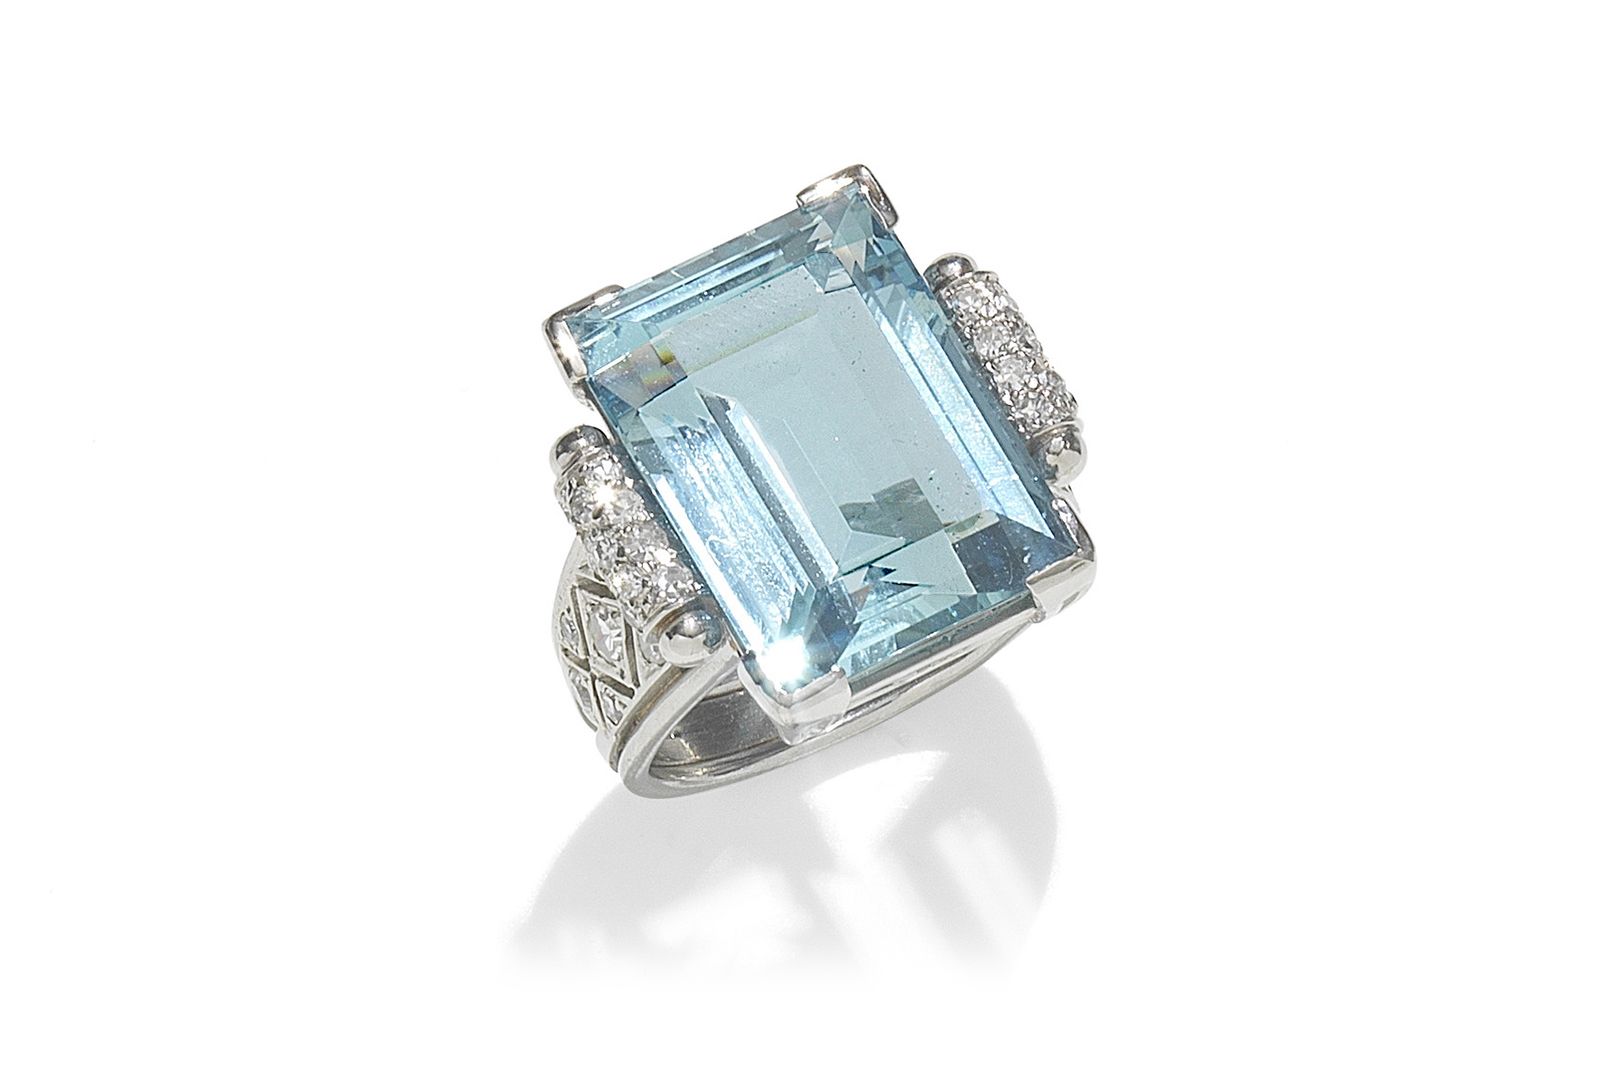 Engagement Ring Styles Through the Years - Diamond wish